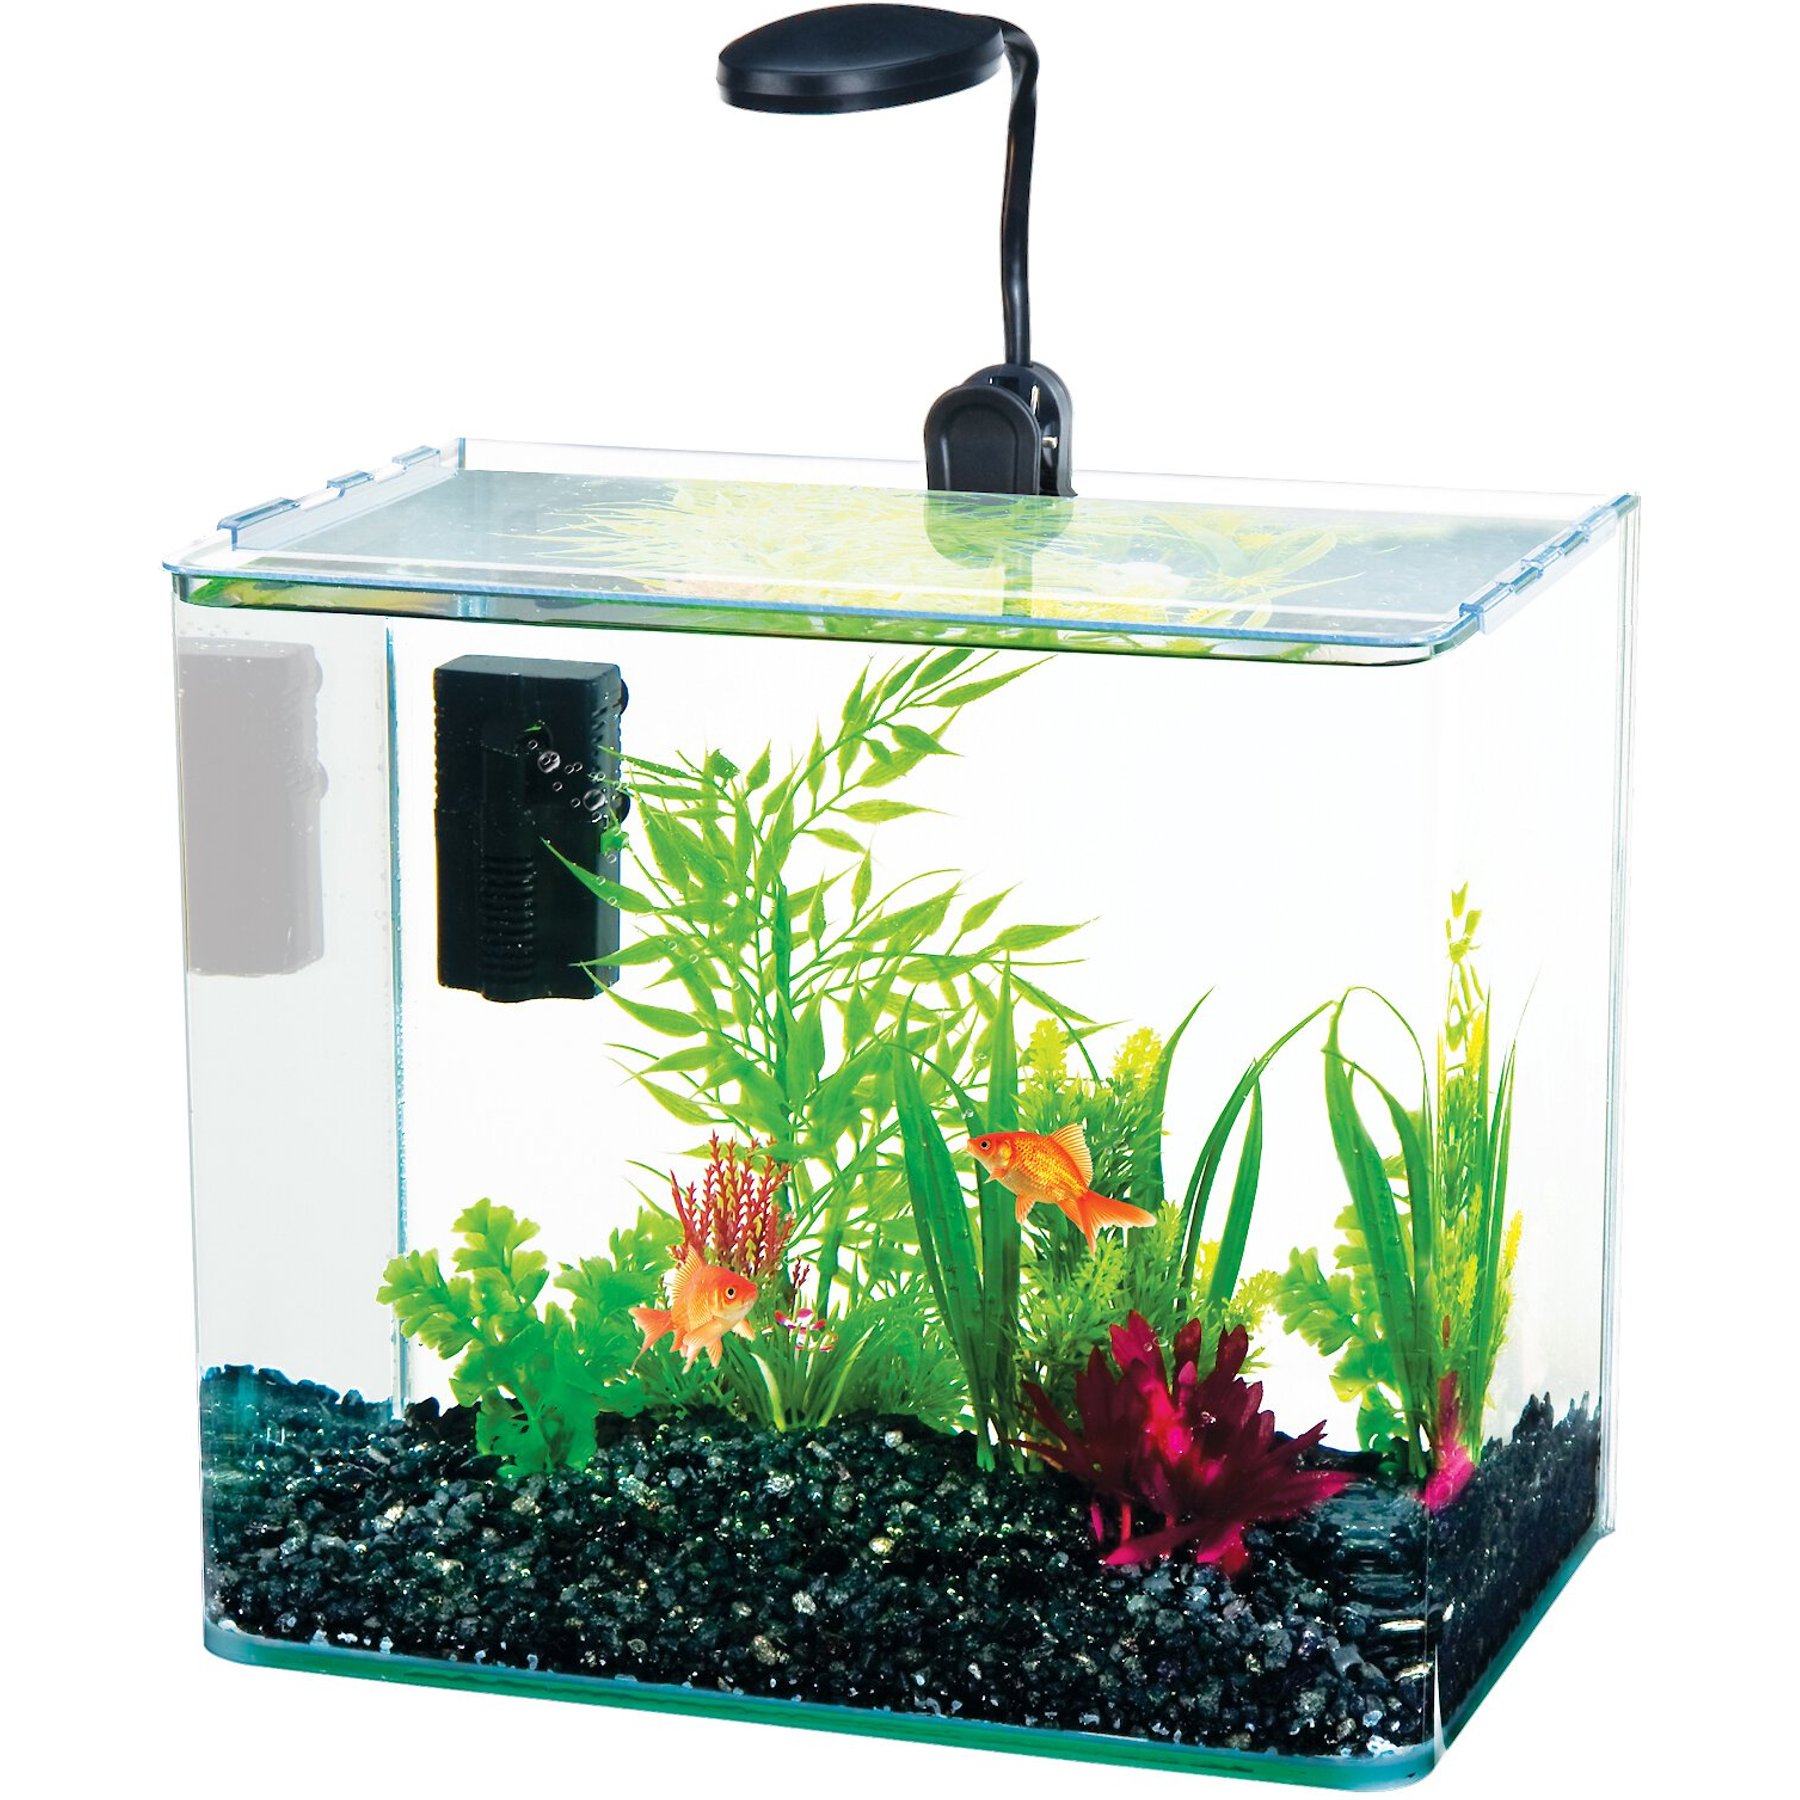 Penn Plax Curved Corner Glass Aquarium Kit, Clear